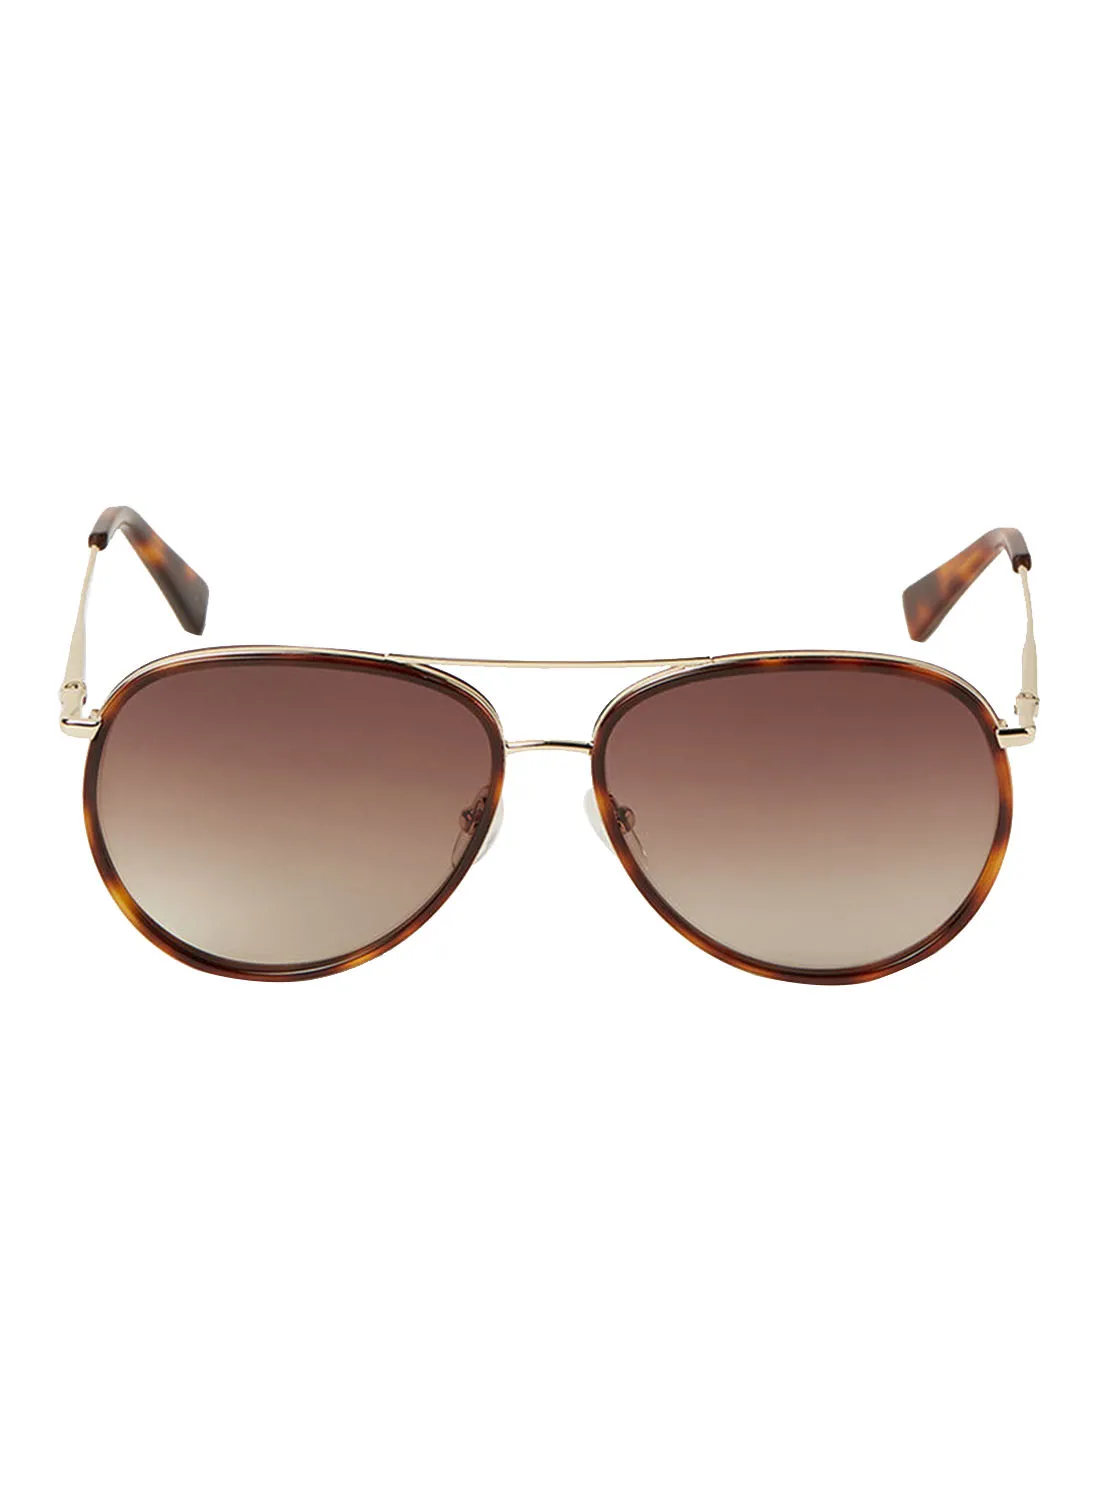 Longchamp Women's Full Rim Metal Aviator Sunglasses - Lens Size: 58 mm